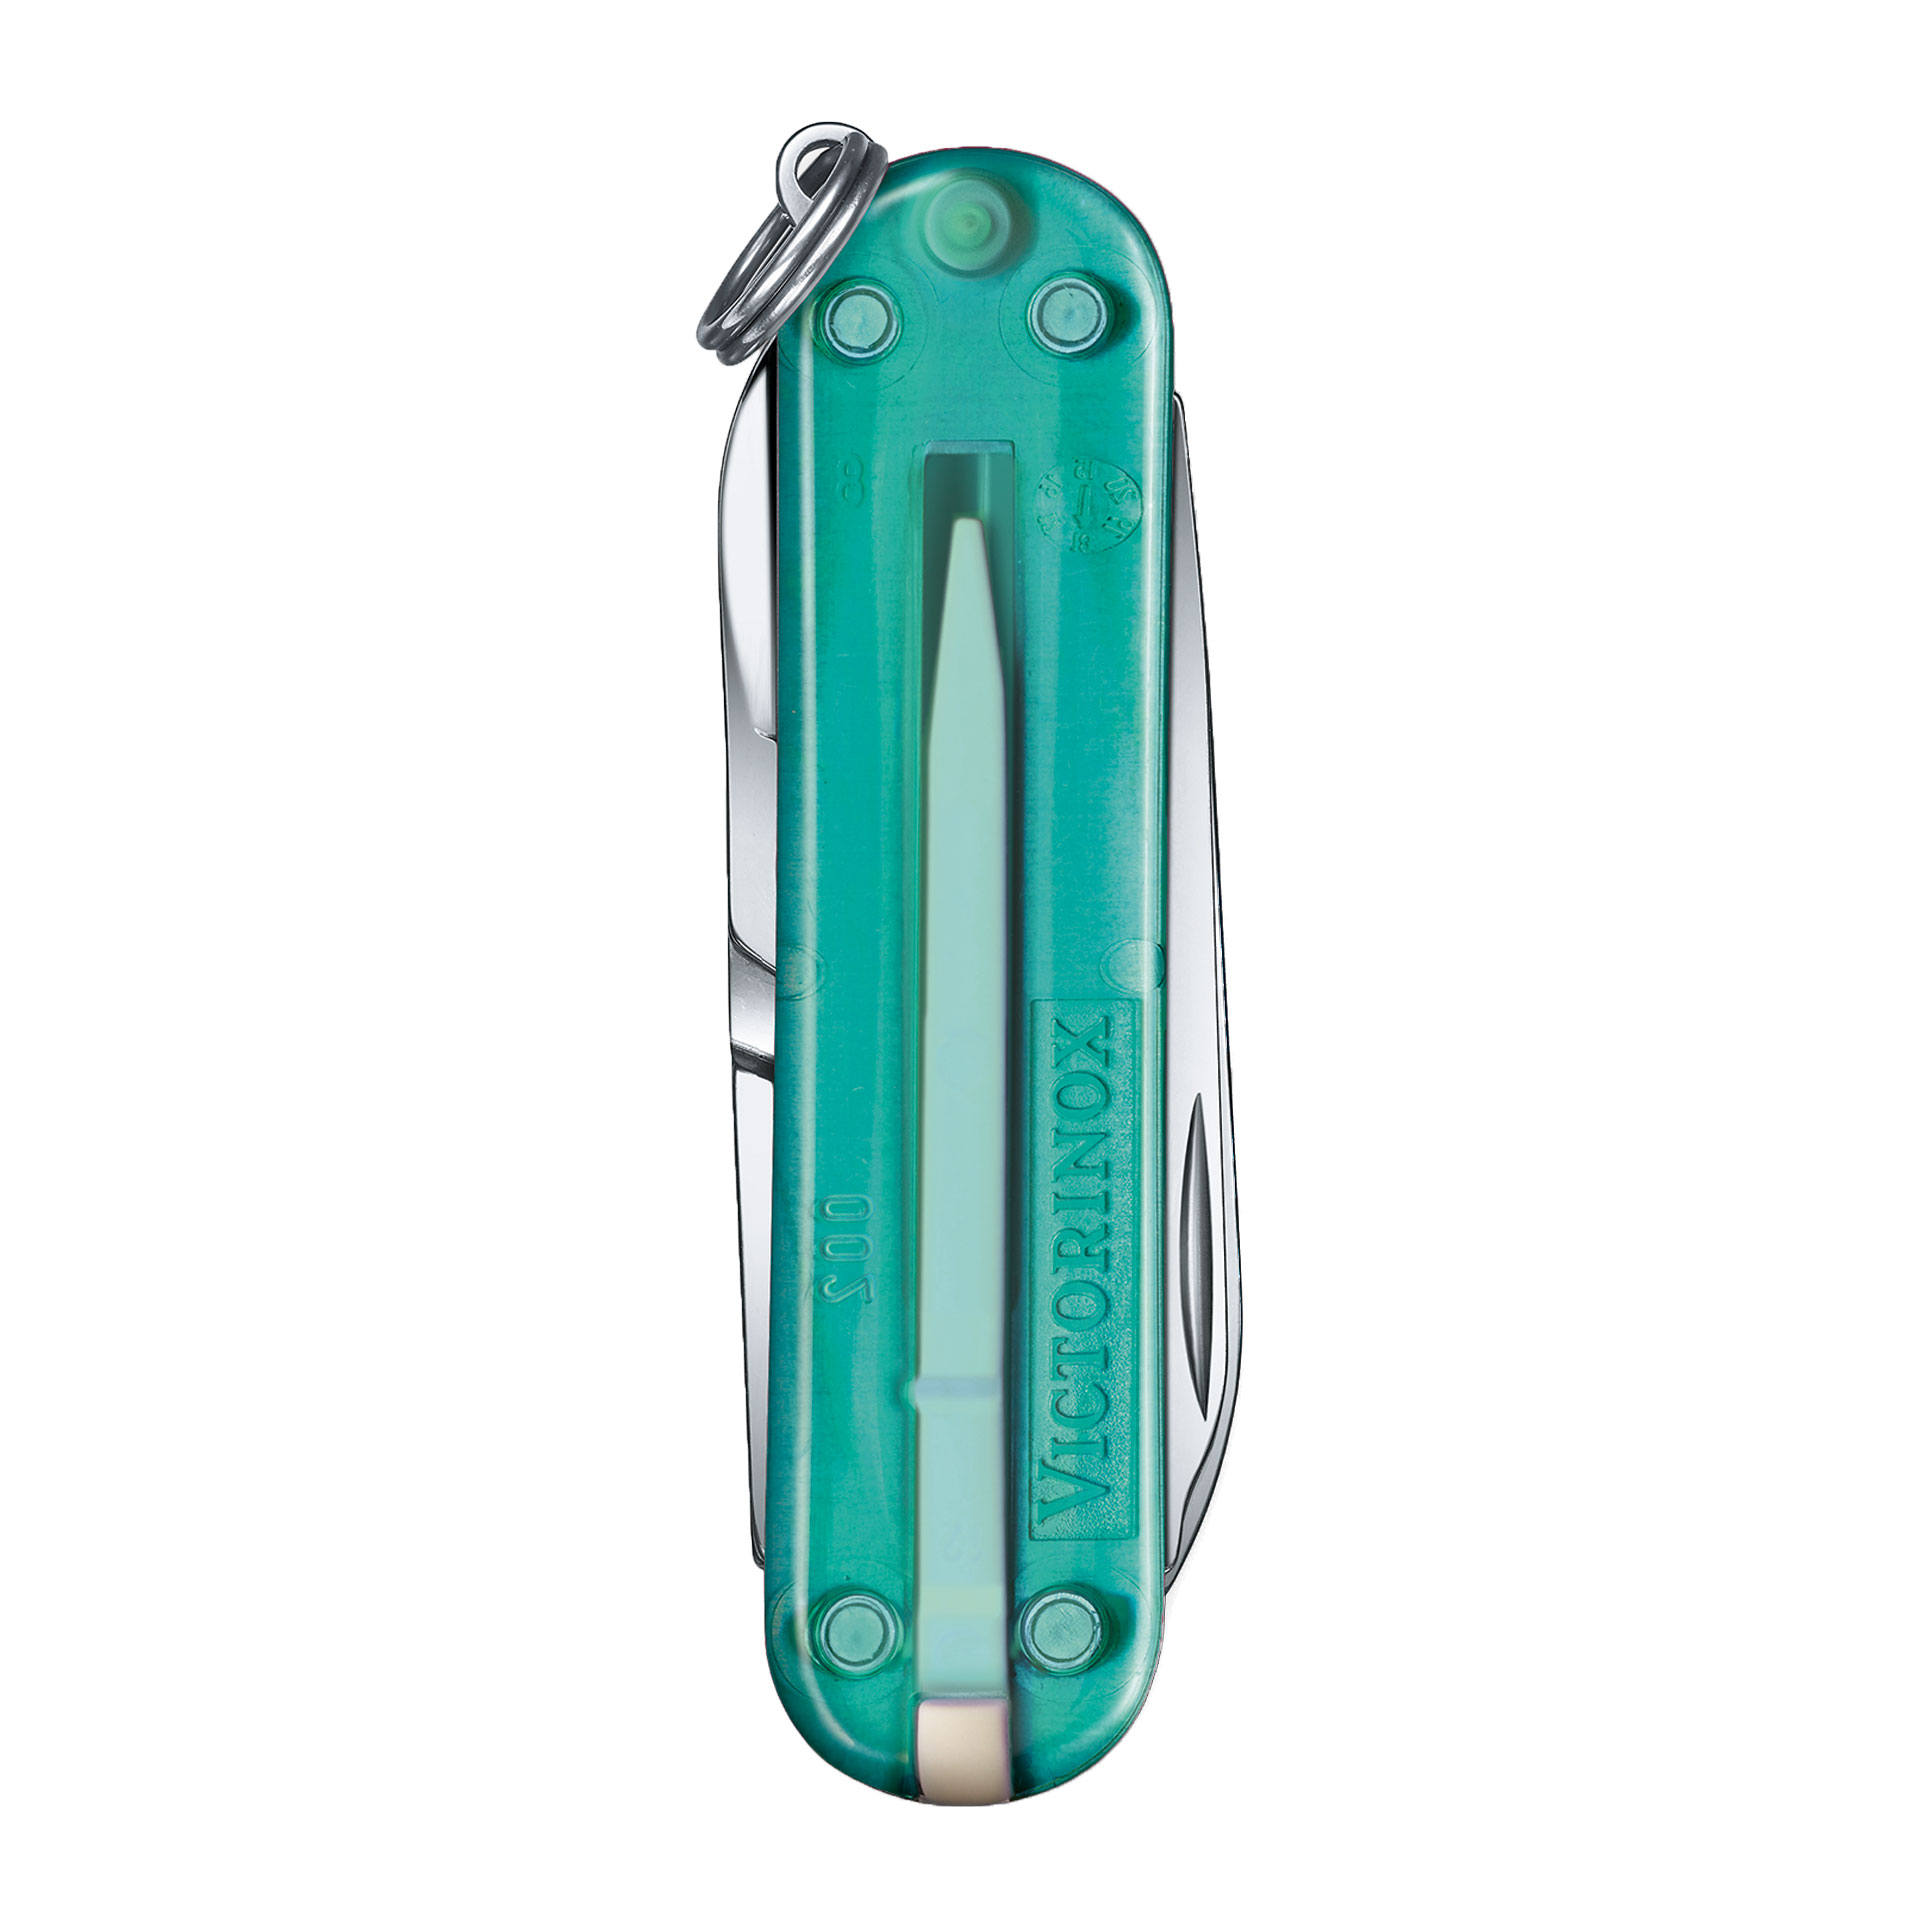 VICTORINOX Classic SD Taschenmesser mit 7 Funktionen 58mm transparent tropical surf